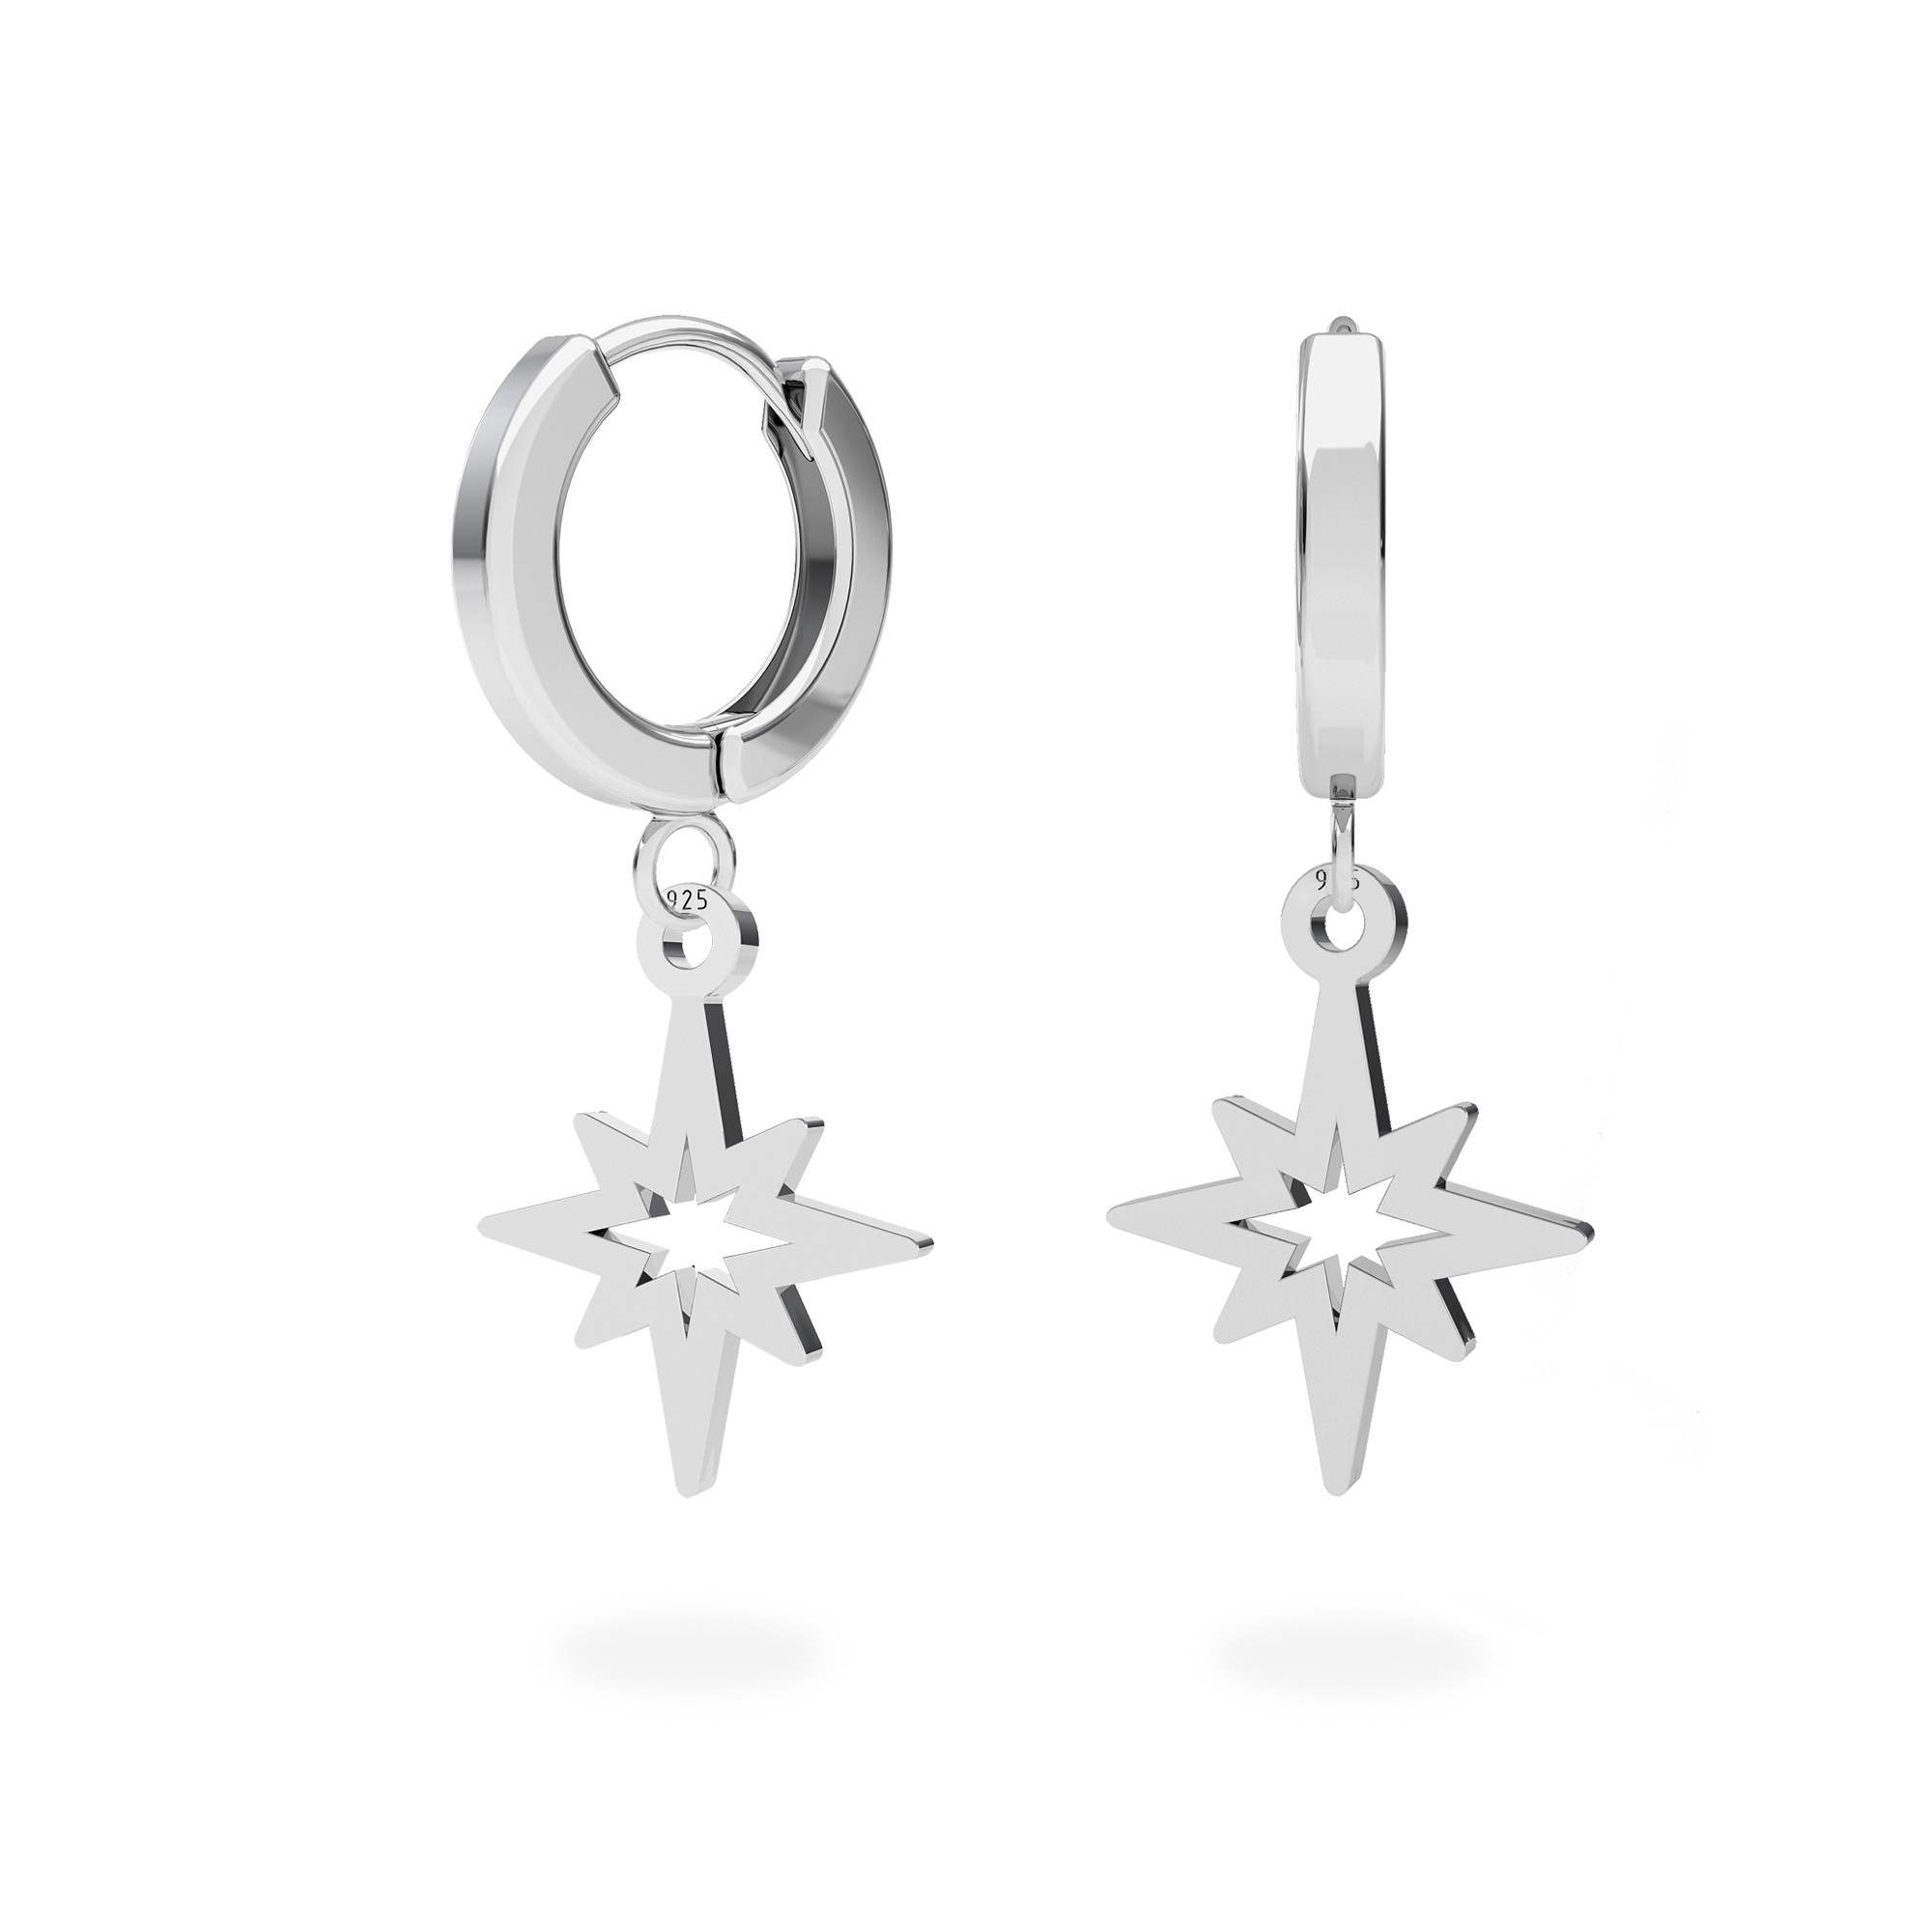 Star earrings sterling silver 925